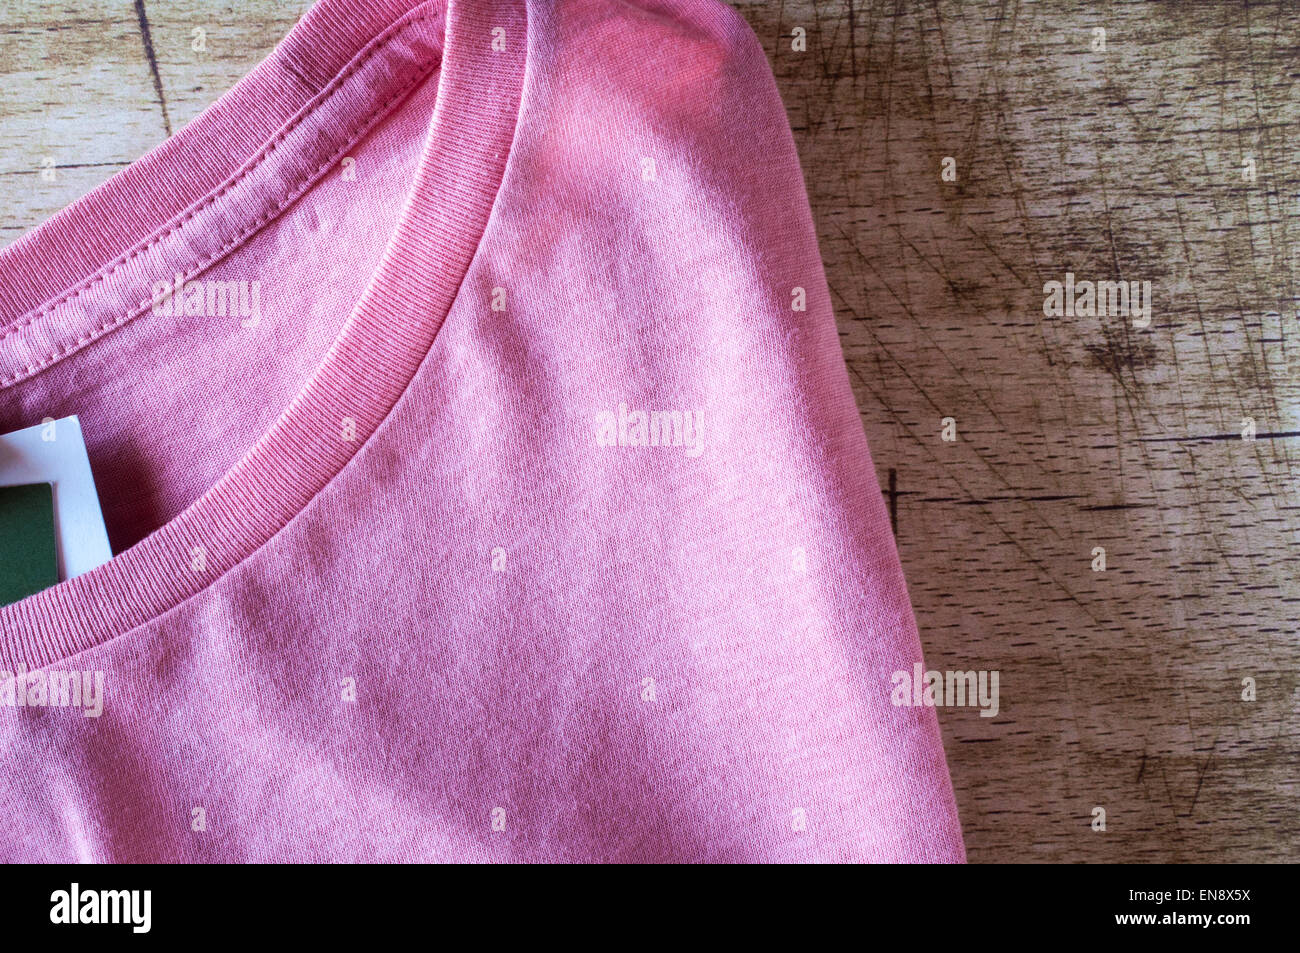 Rosa cuello redondo T-Shirt cerrar sobre fondo de madera Foto de stock